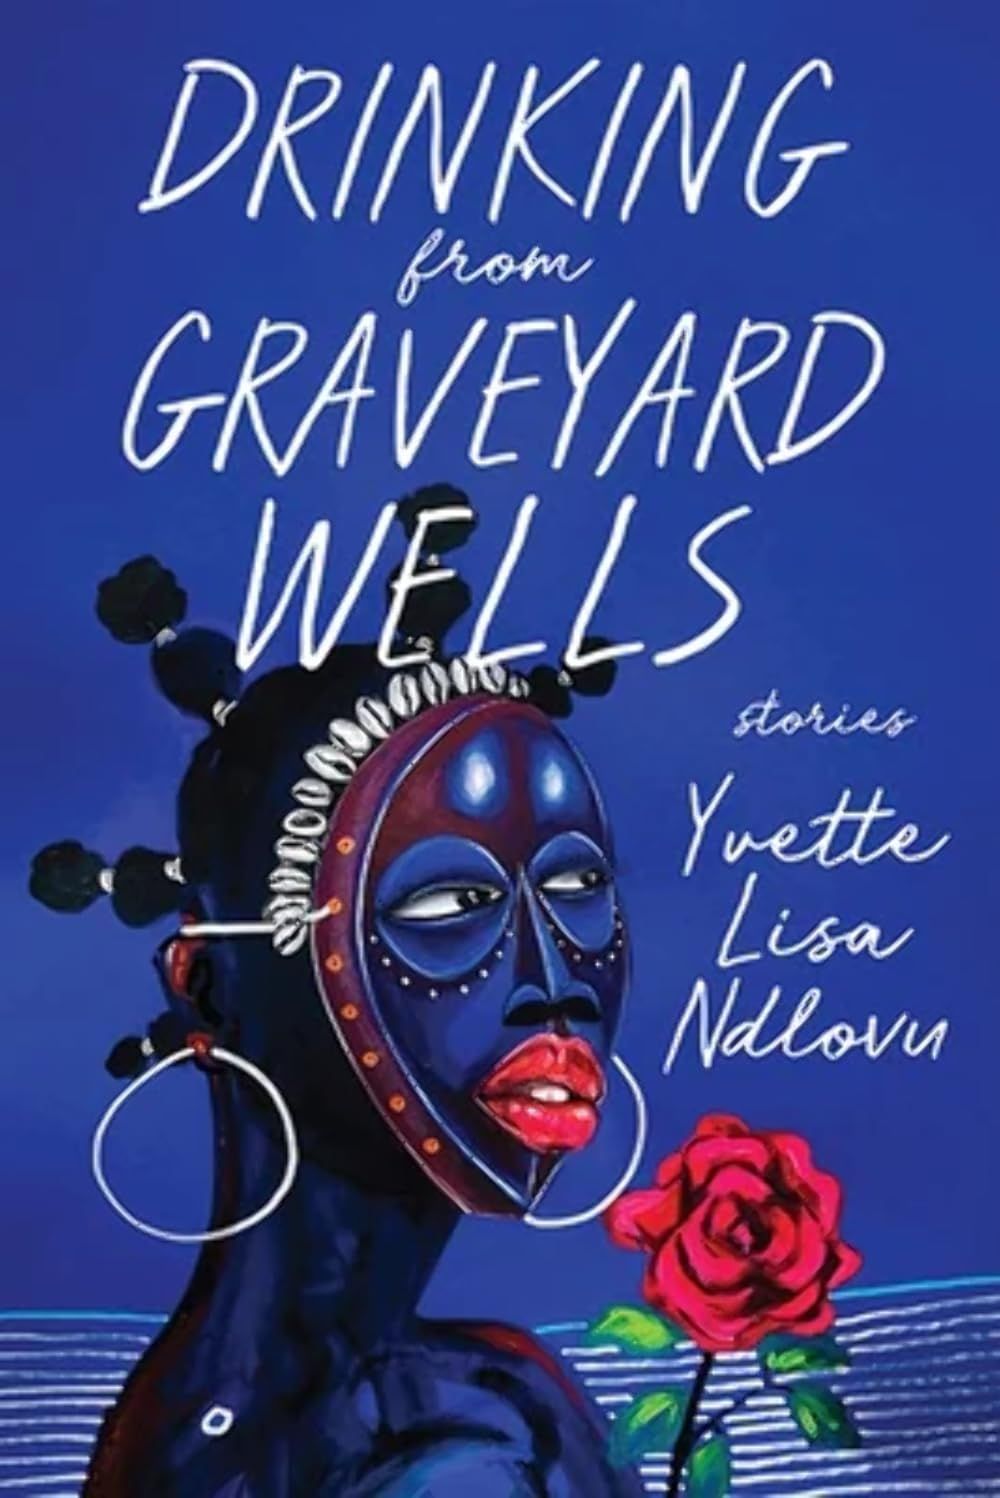 Going Mad: On Yvette Lisa Ndlovu’s “Drinking from Graveyard Wells”